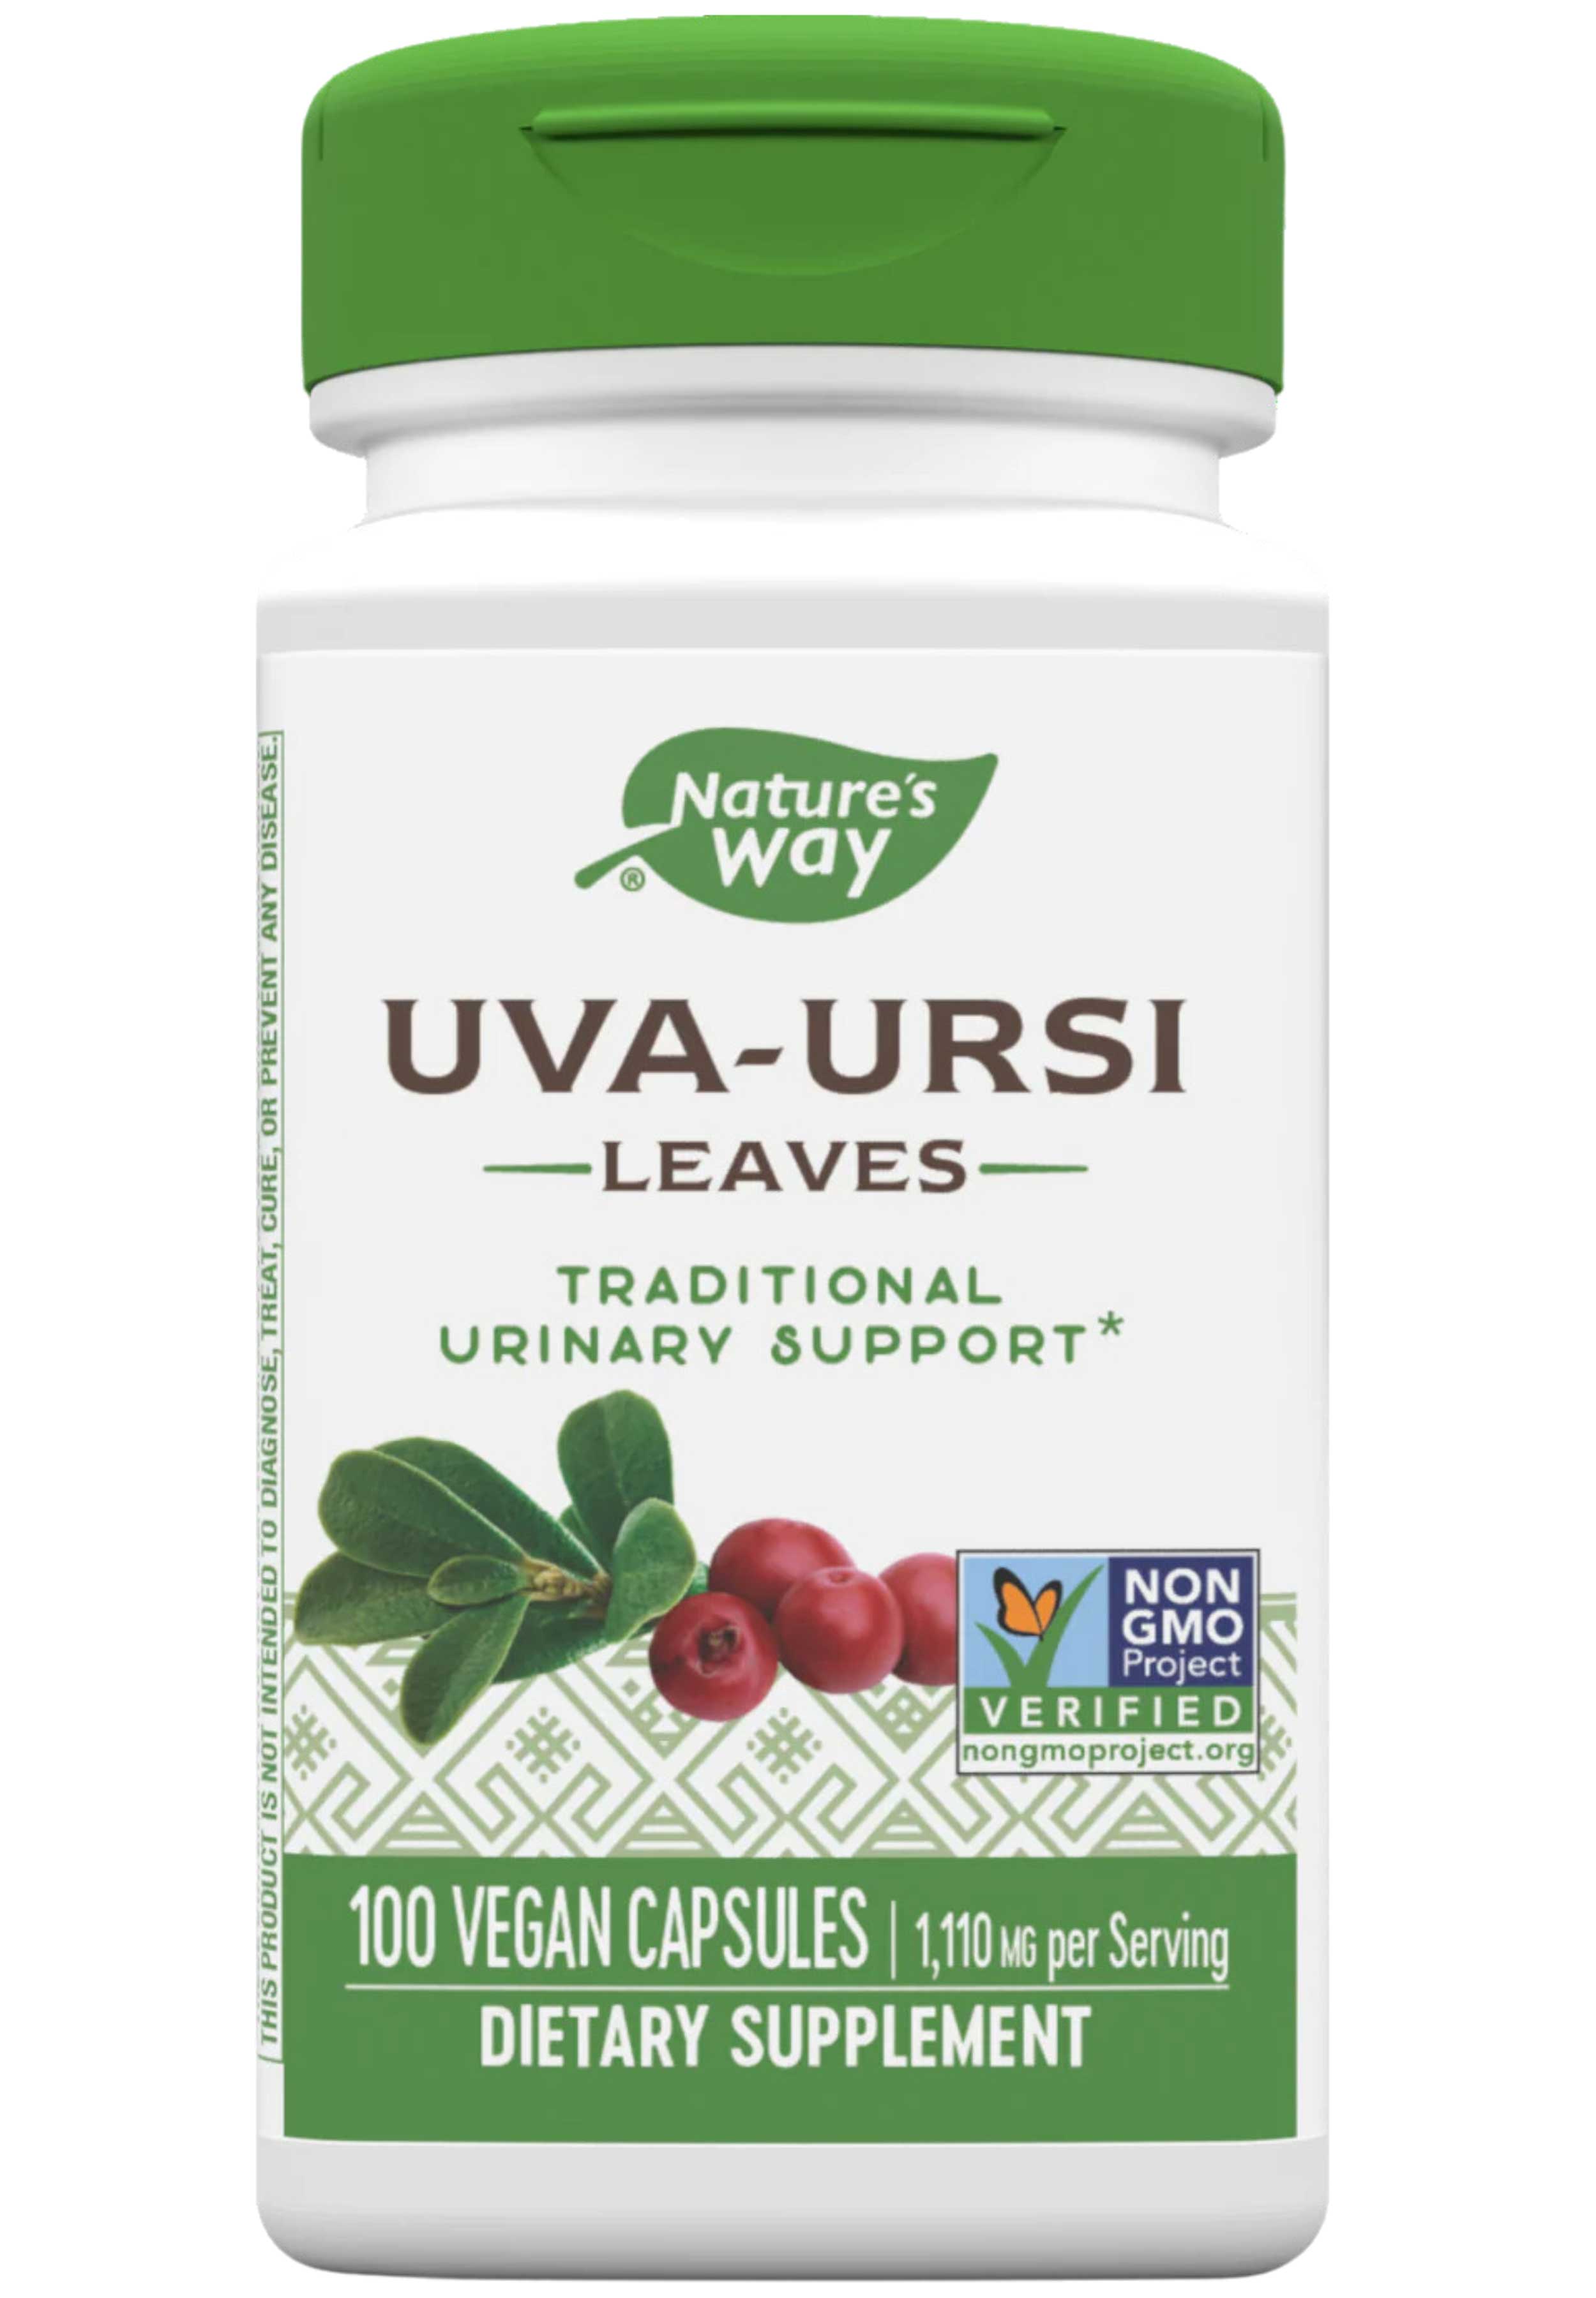 Nature's Way Uva Ursi Leaves